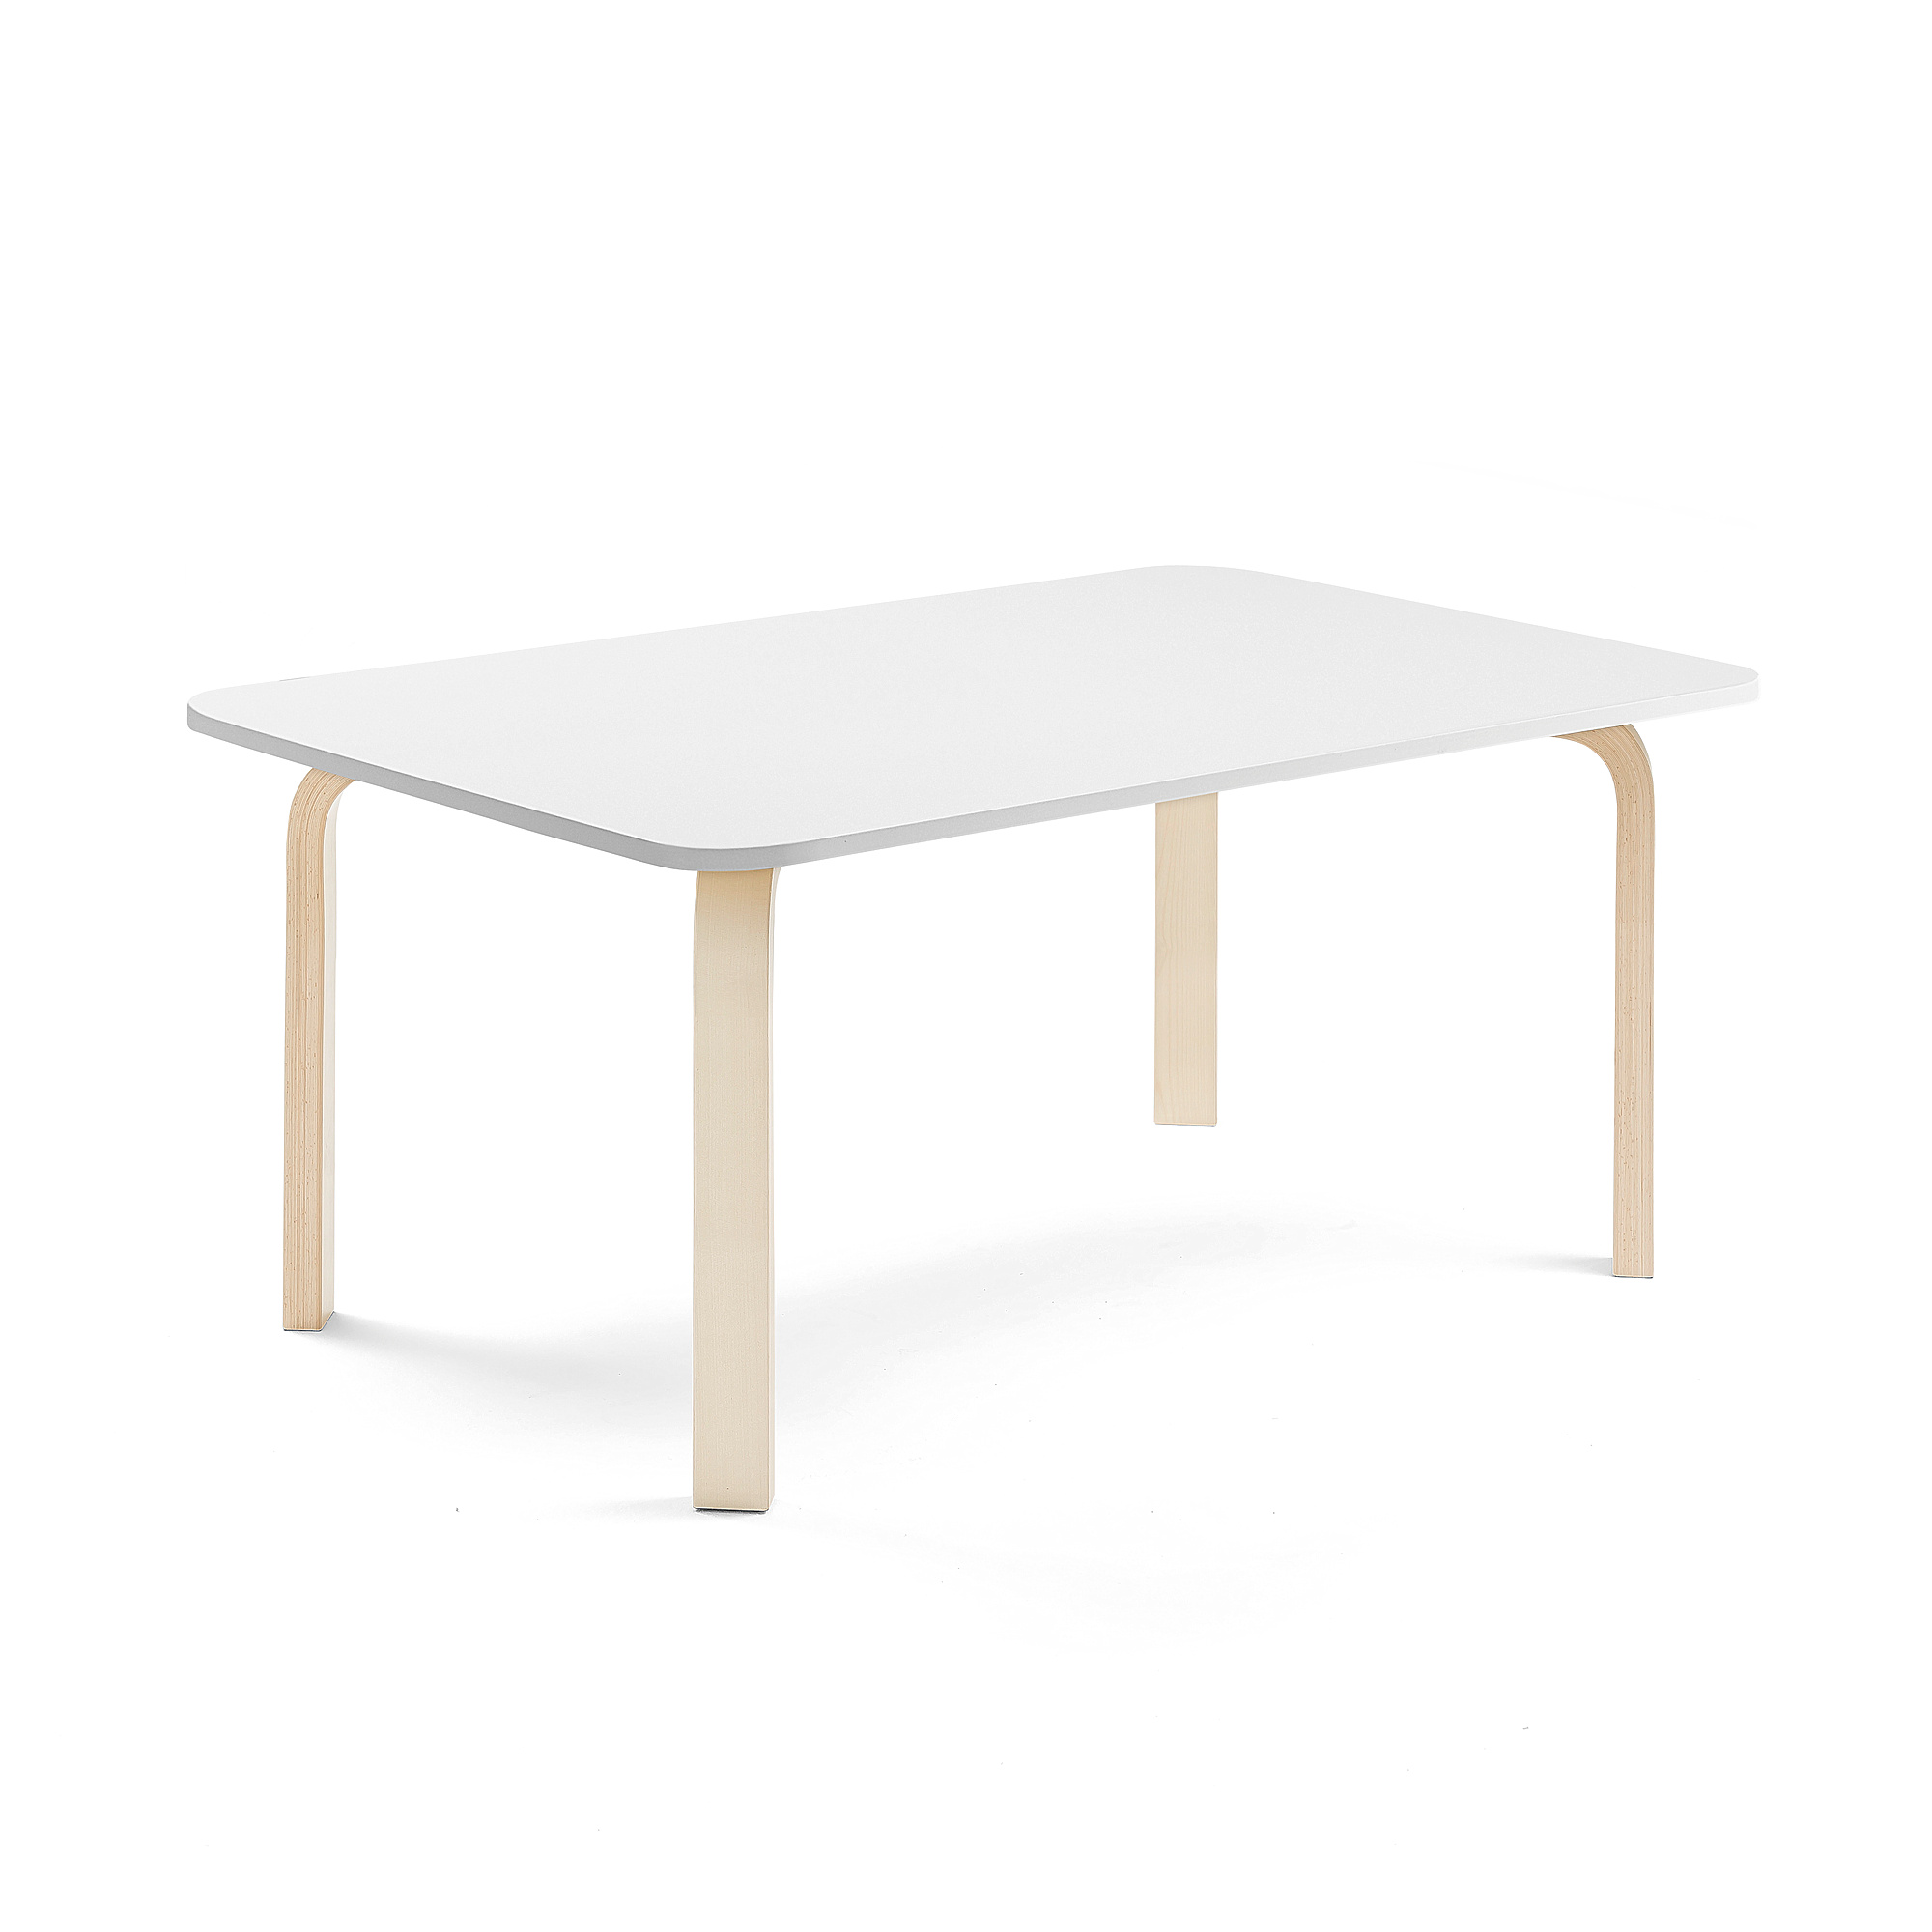 Stůl ELTON, 1200x800x530 mm, bříza, akustická HPL deska, bílá